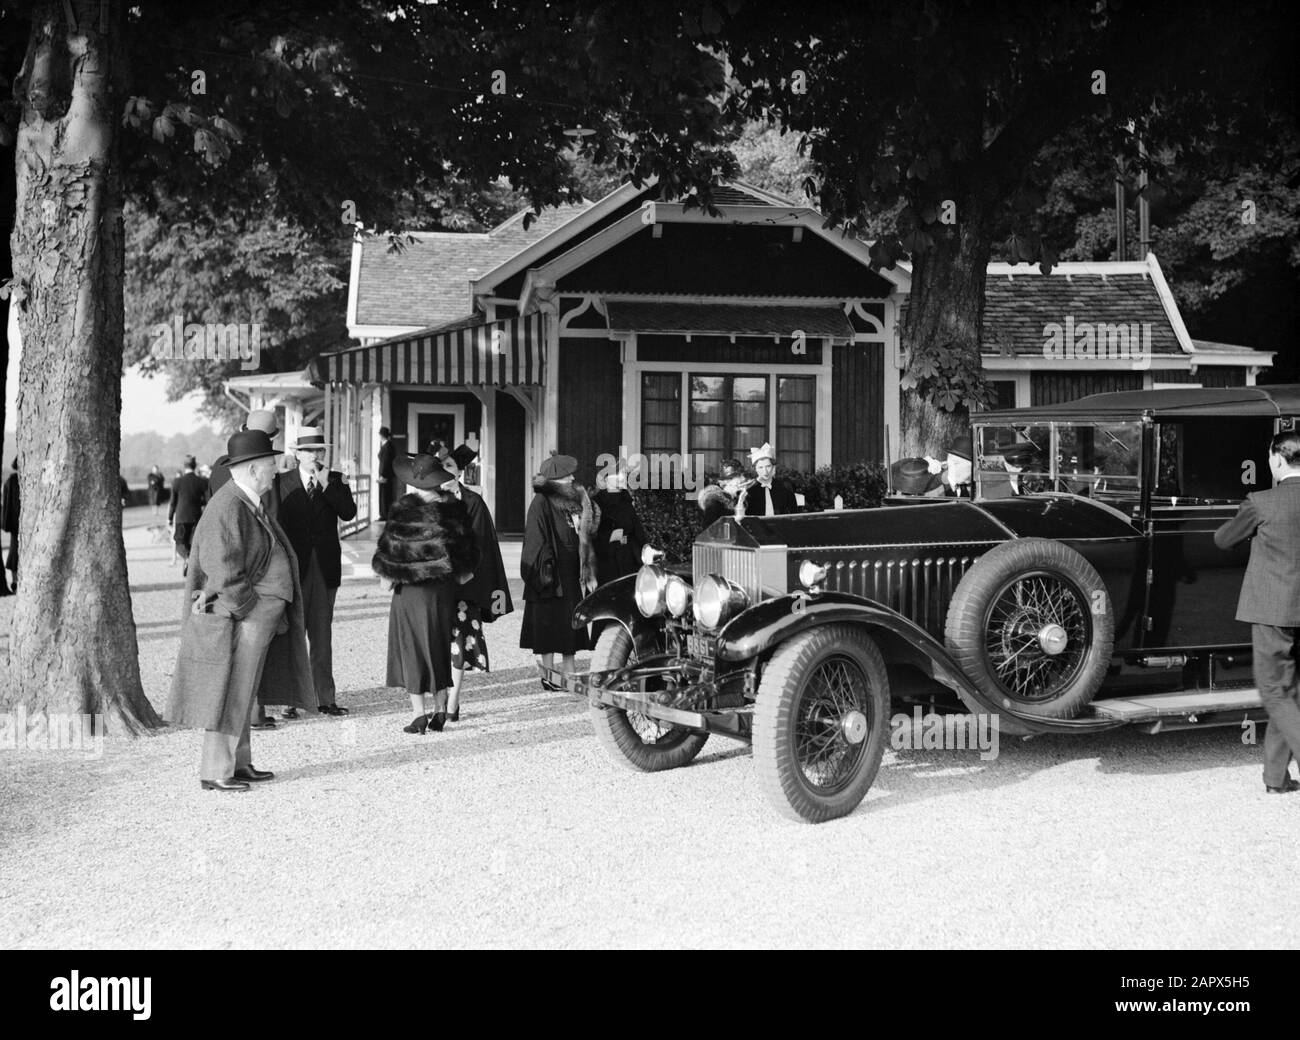 Polo Au Parc De Bagatelle Audience À Une Rolls Royce Date: Juin 1936 Lieu:  France, Paris Mots Clés: Voitures, Loisirs Photo Stock - Alamy